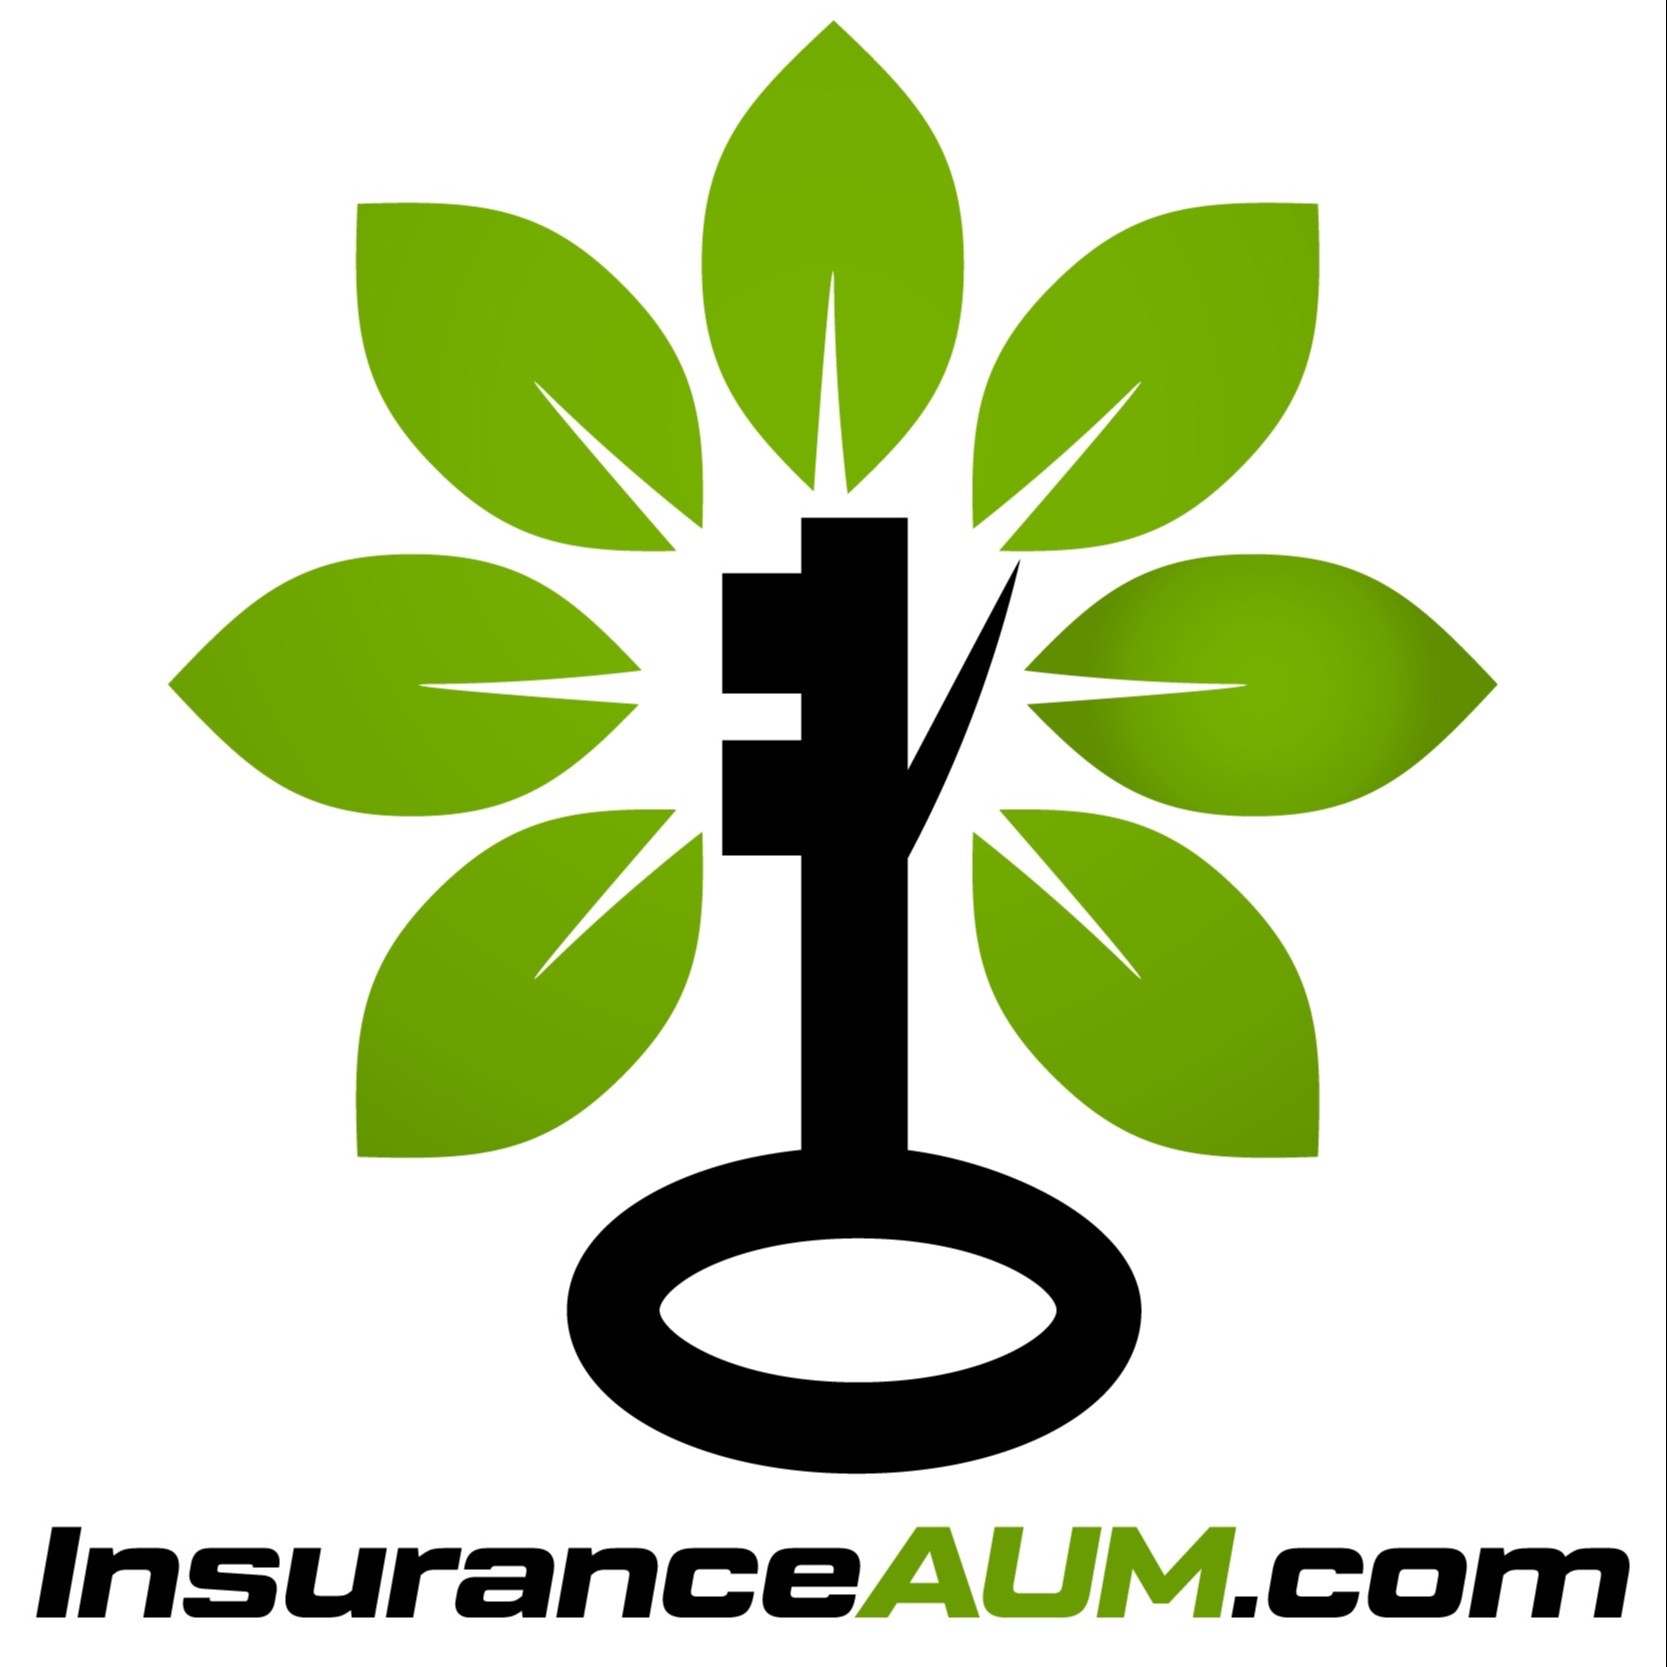 InsuranceAUM.com